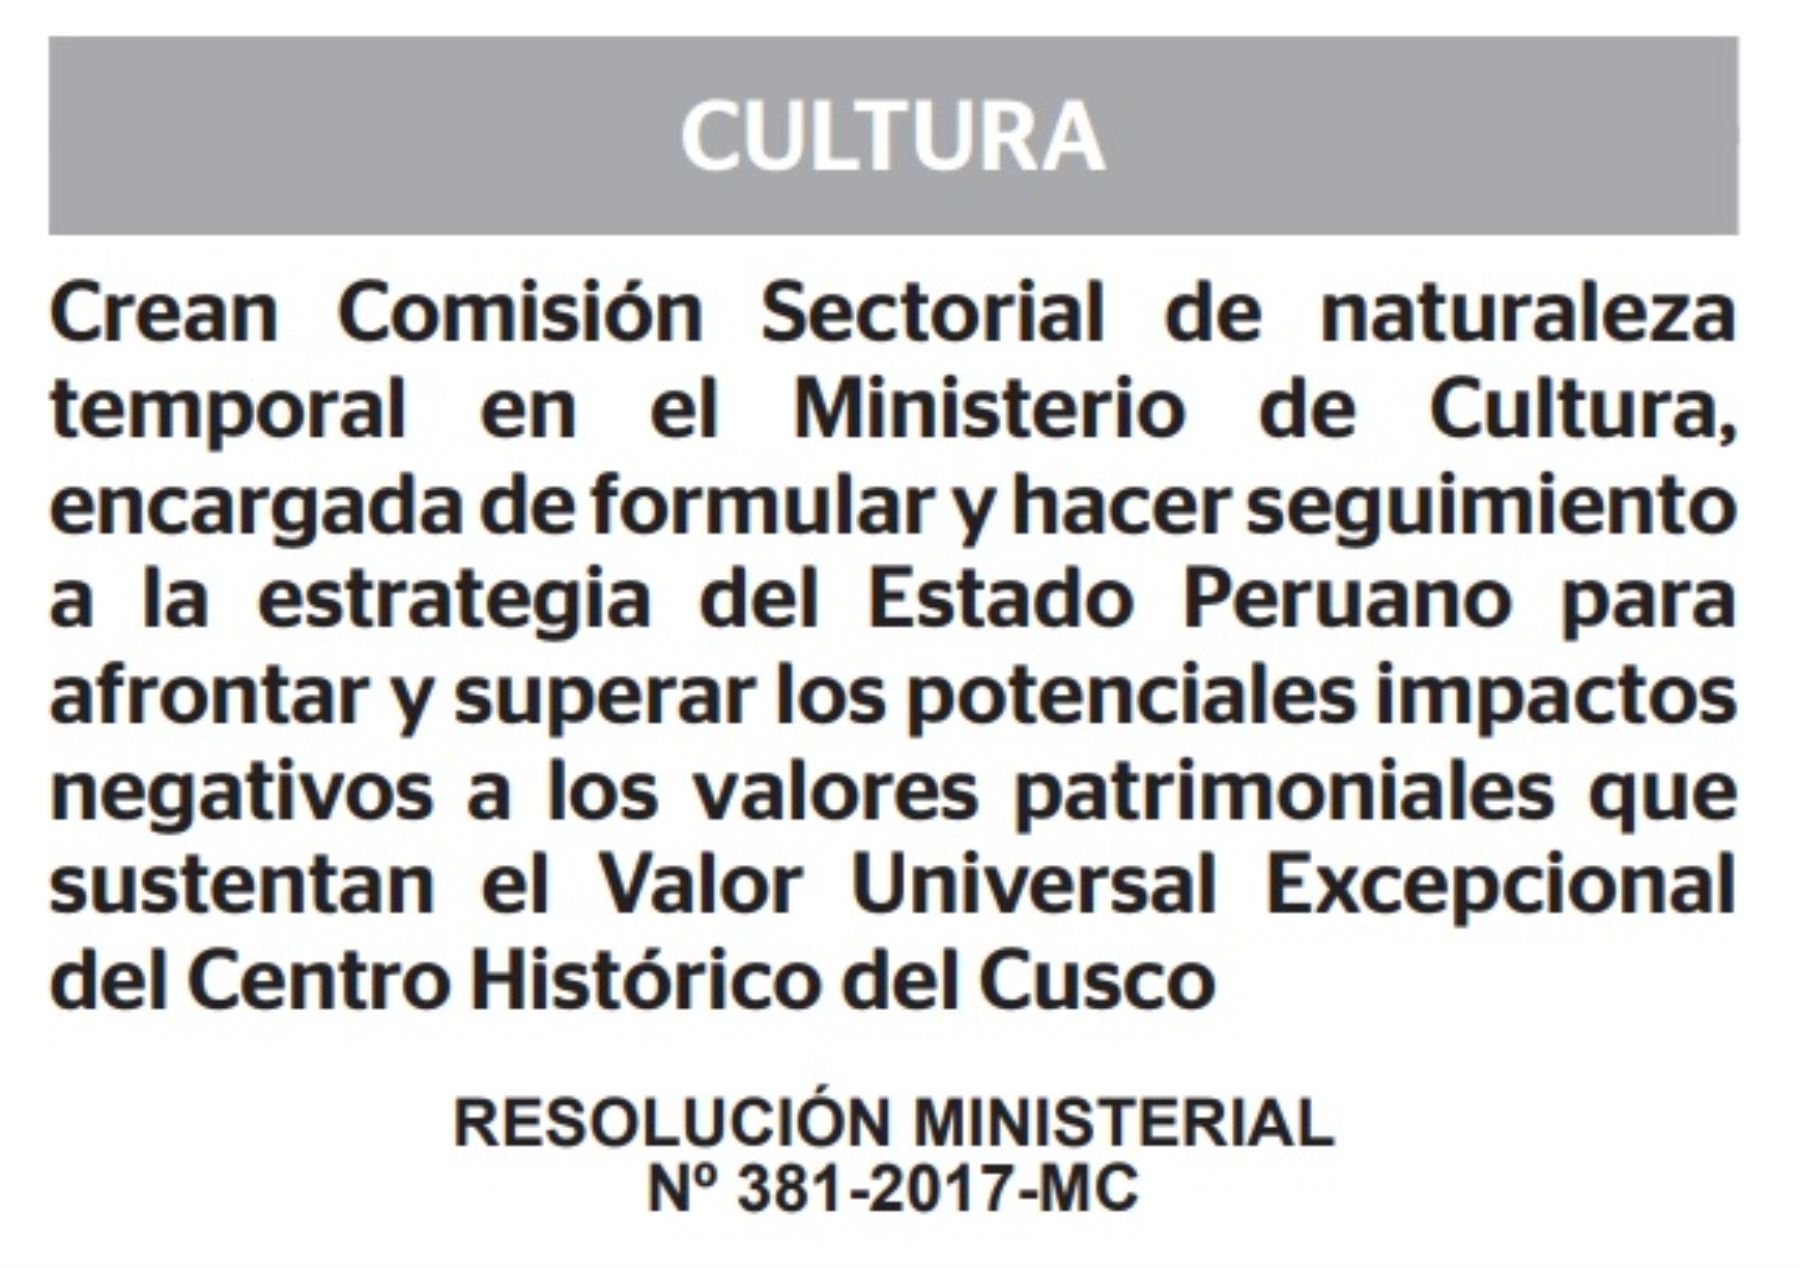 El Ministerio de Cultura creó una comisión sectorial de naturaleza temporal encargada de formular y hacer seguimiento a la estrategia del Estado Peruano para afrontar y superar los potenciales impactos negativos a los valores patrimoniales que sustentan el Valor Universal Excepcional del Centro Histórico del Cusco declarado por la Unesco.